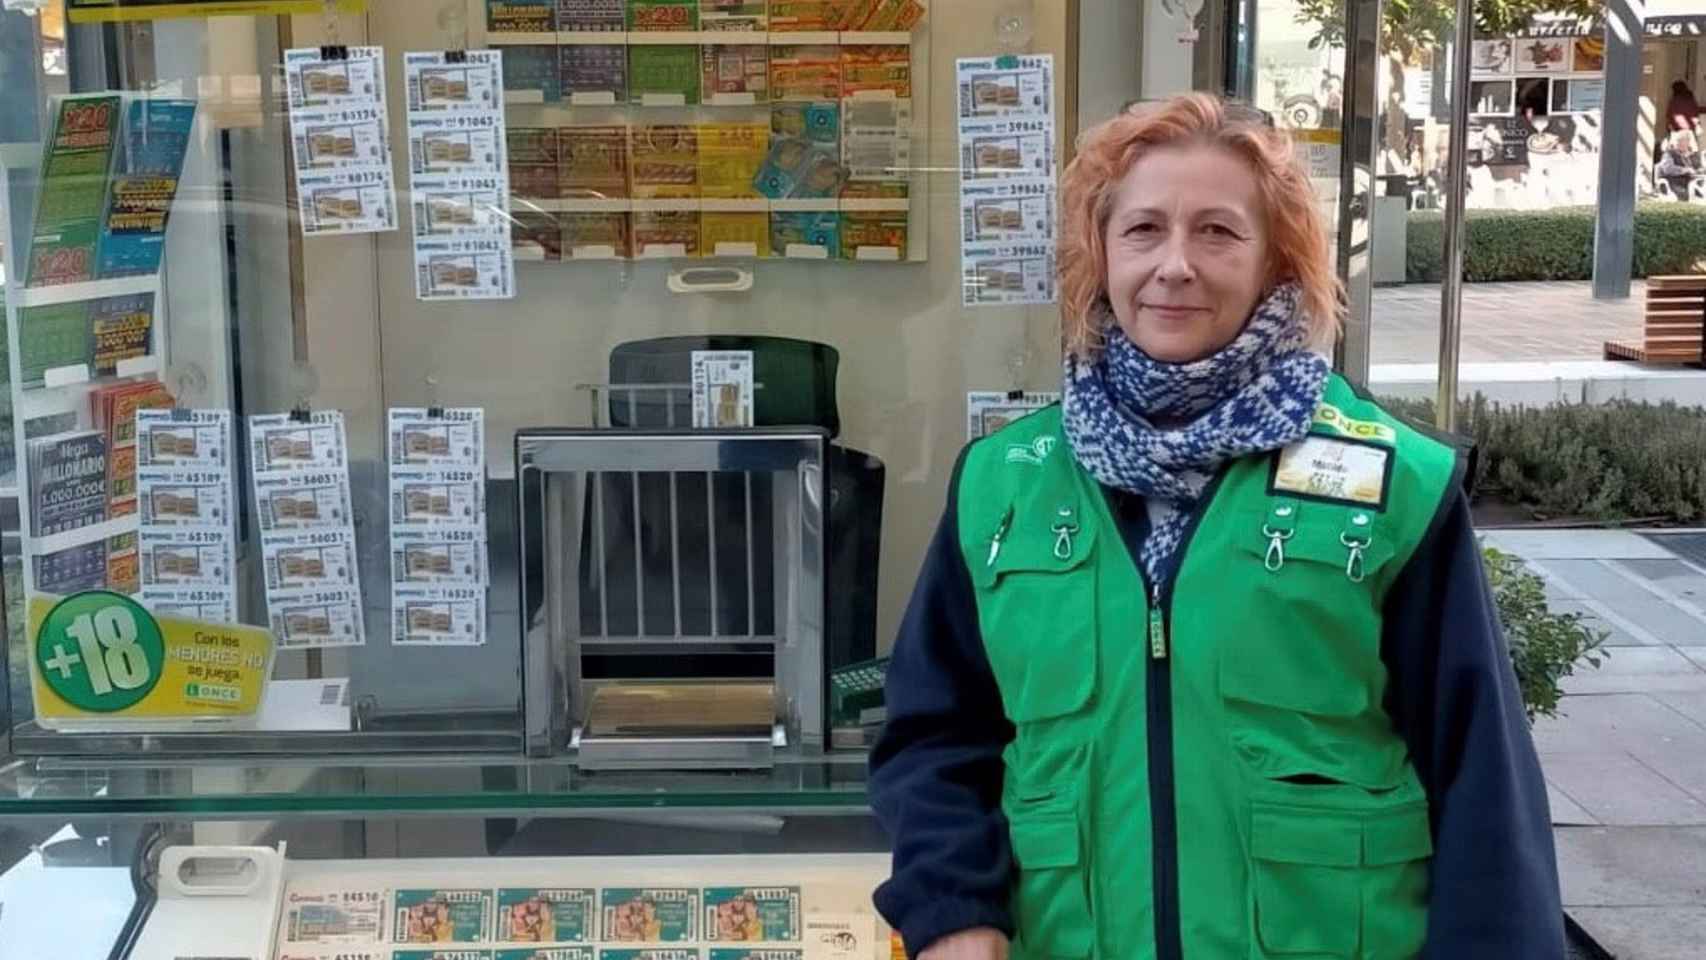 Matilde León, la vendedora del cupón agraciado en Torremolinos.